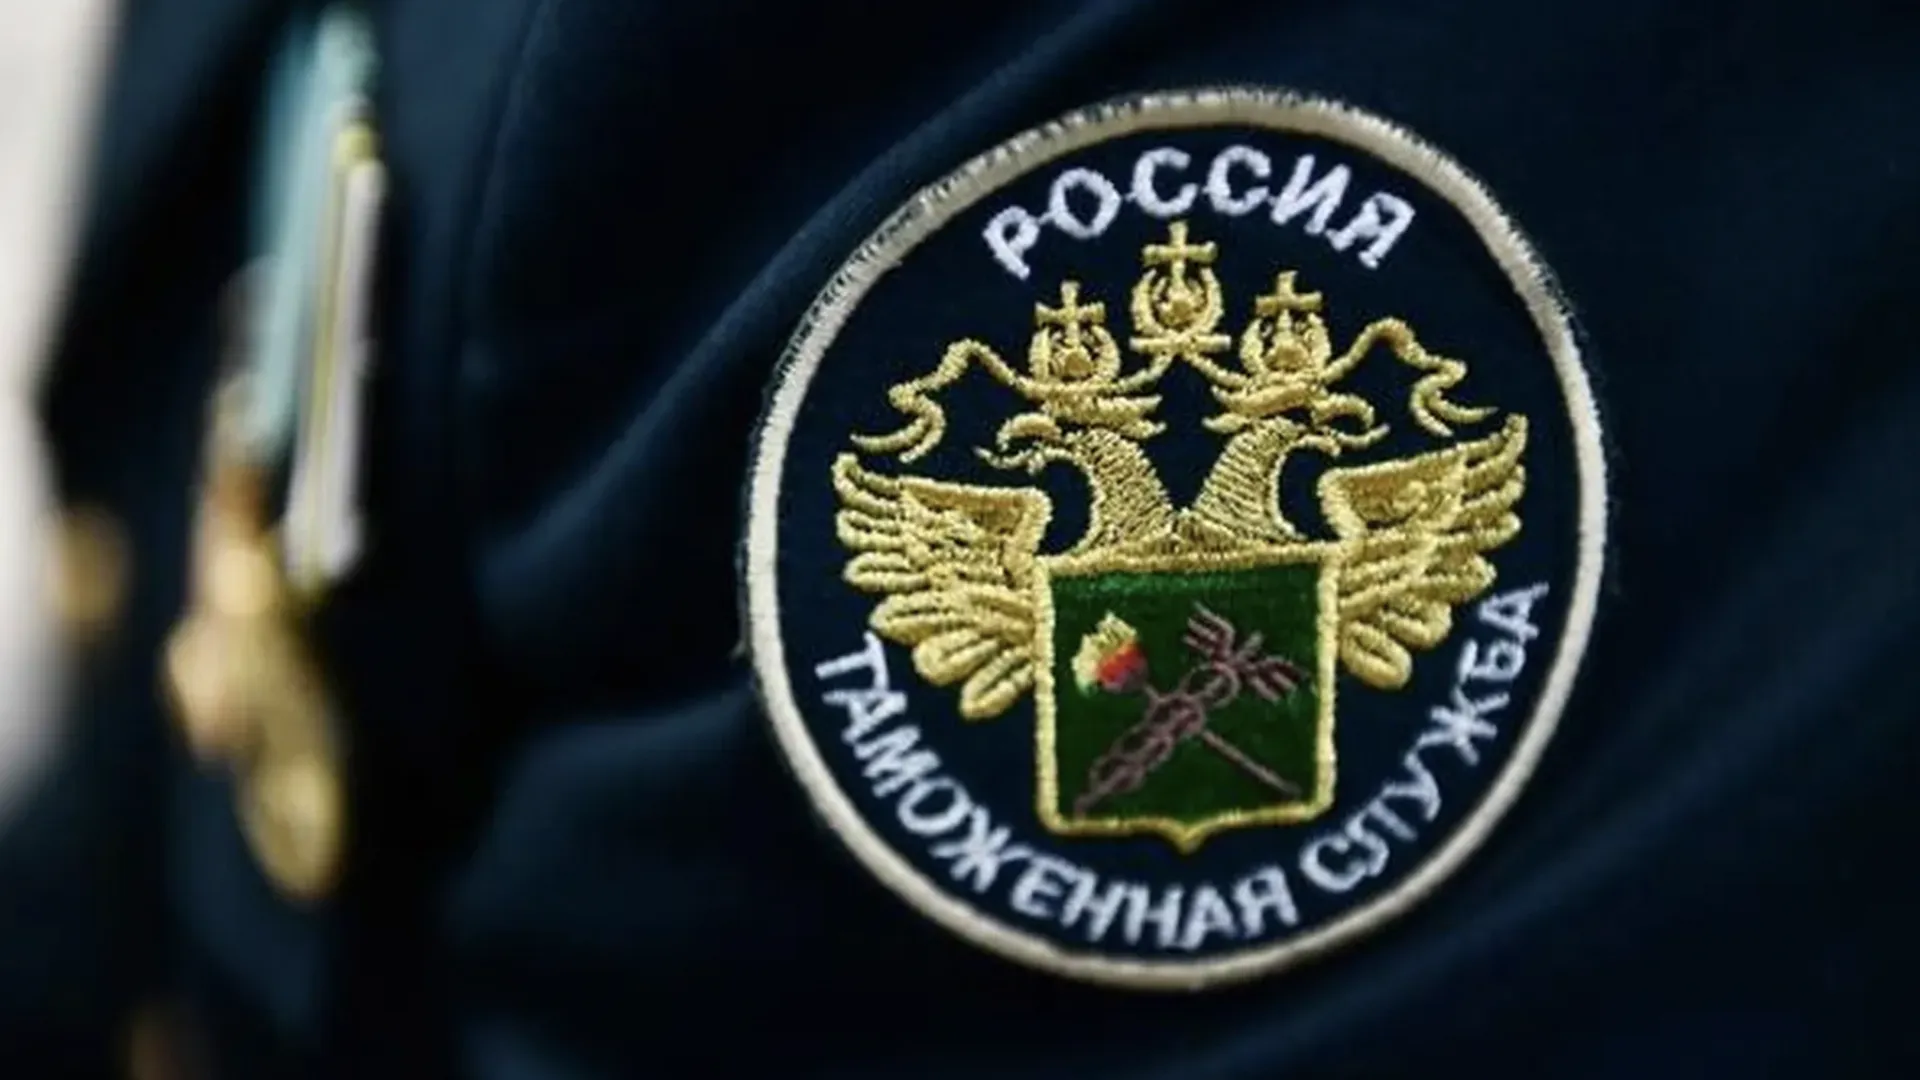 Часы, кольцо и серьги. Таможенники в Домодедово нашли у пассажира украшения на 10 млн рублей